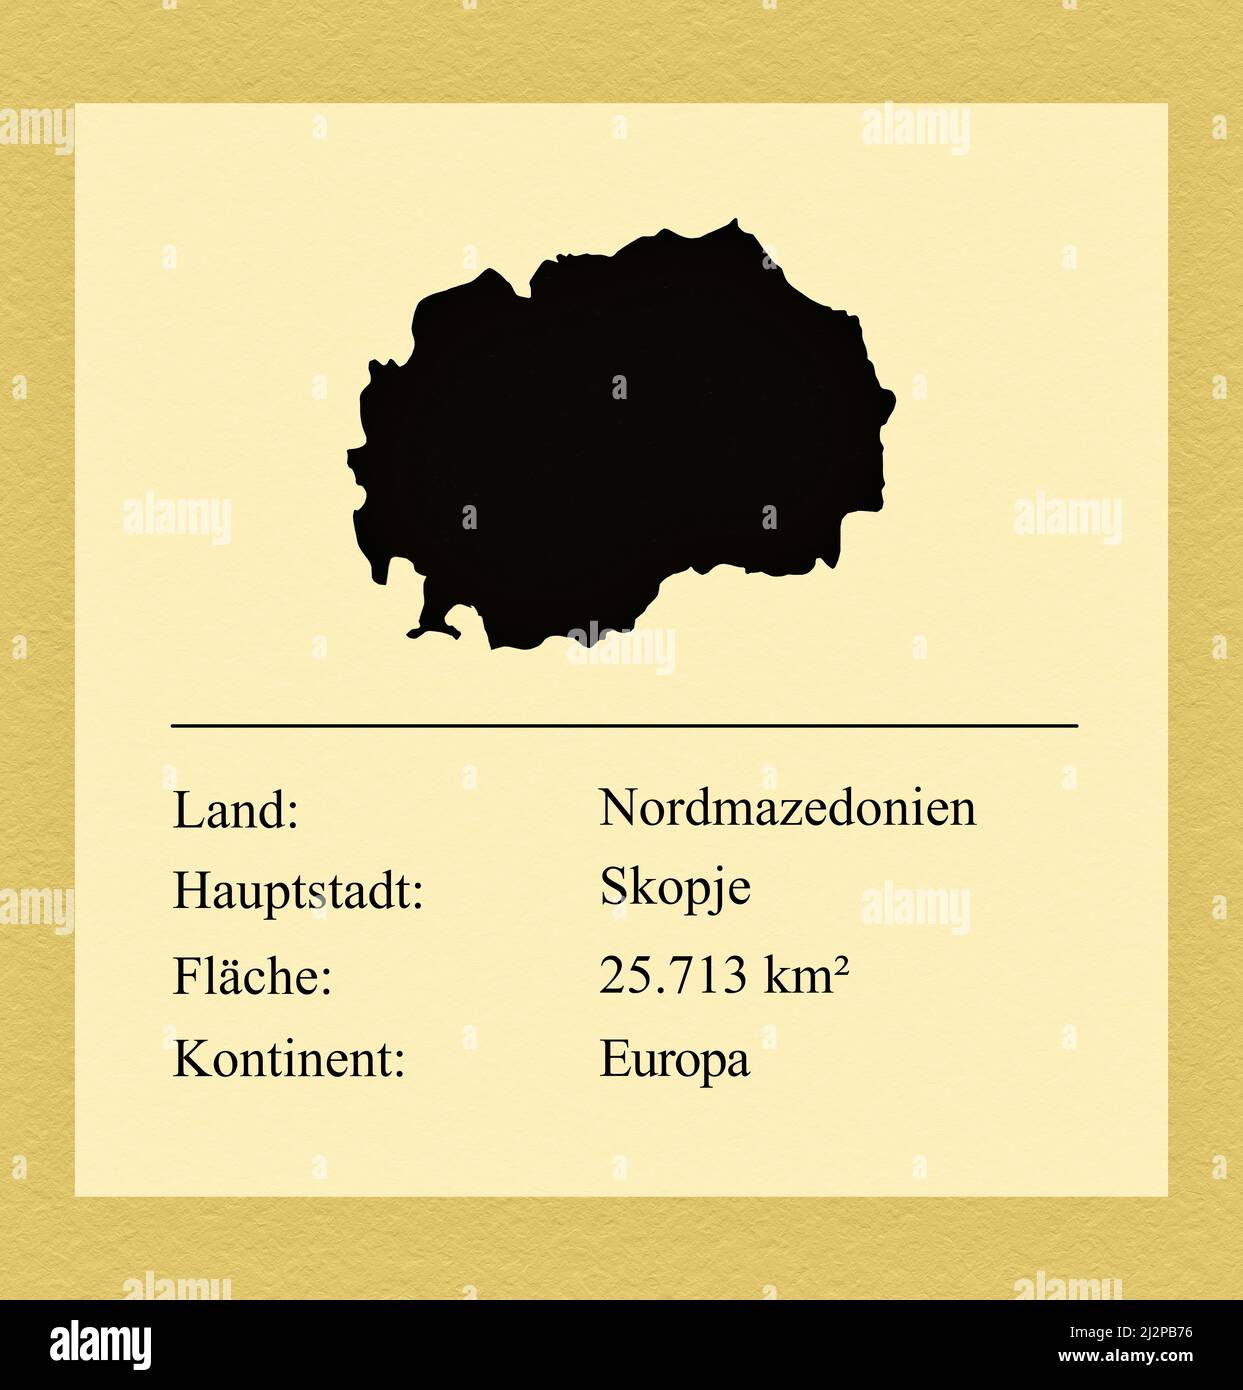 Umrisse des Landes Nordmazedonien, darunter ein kleiner Steckbrief mit Ländernamen, Hauptstadt, Fläche und Kontinent Foto de stock